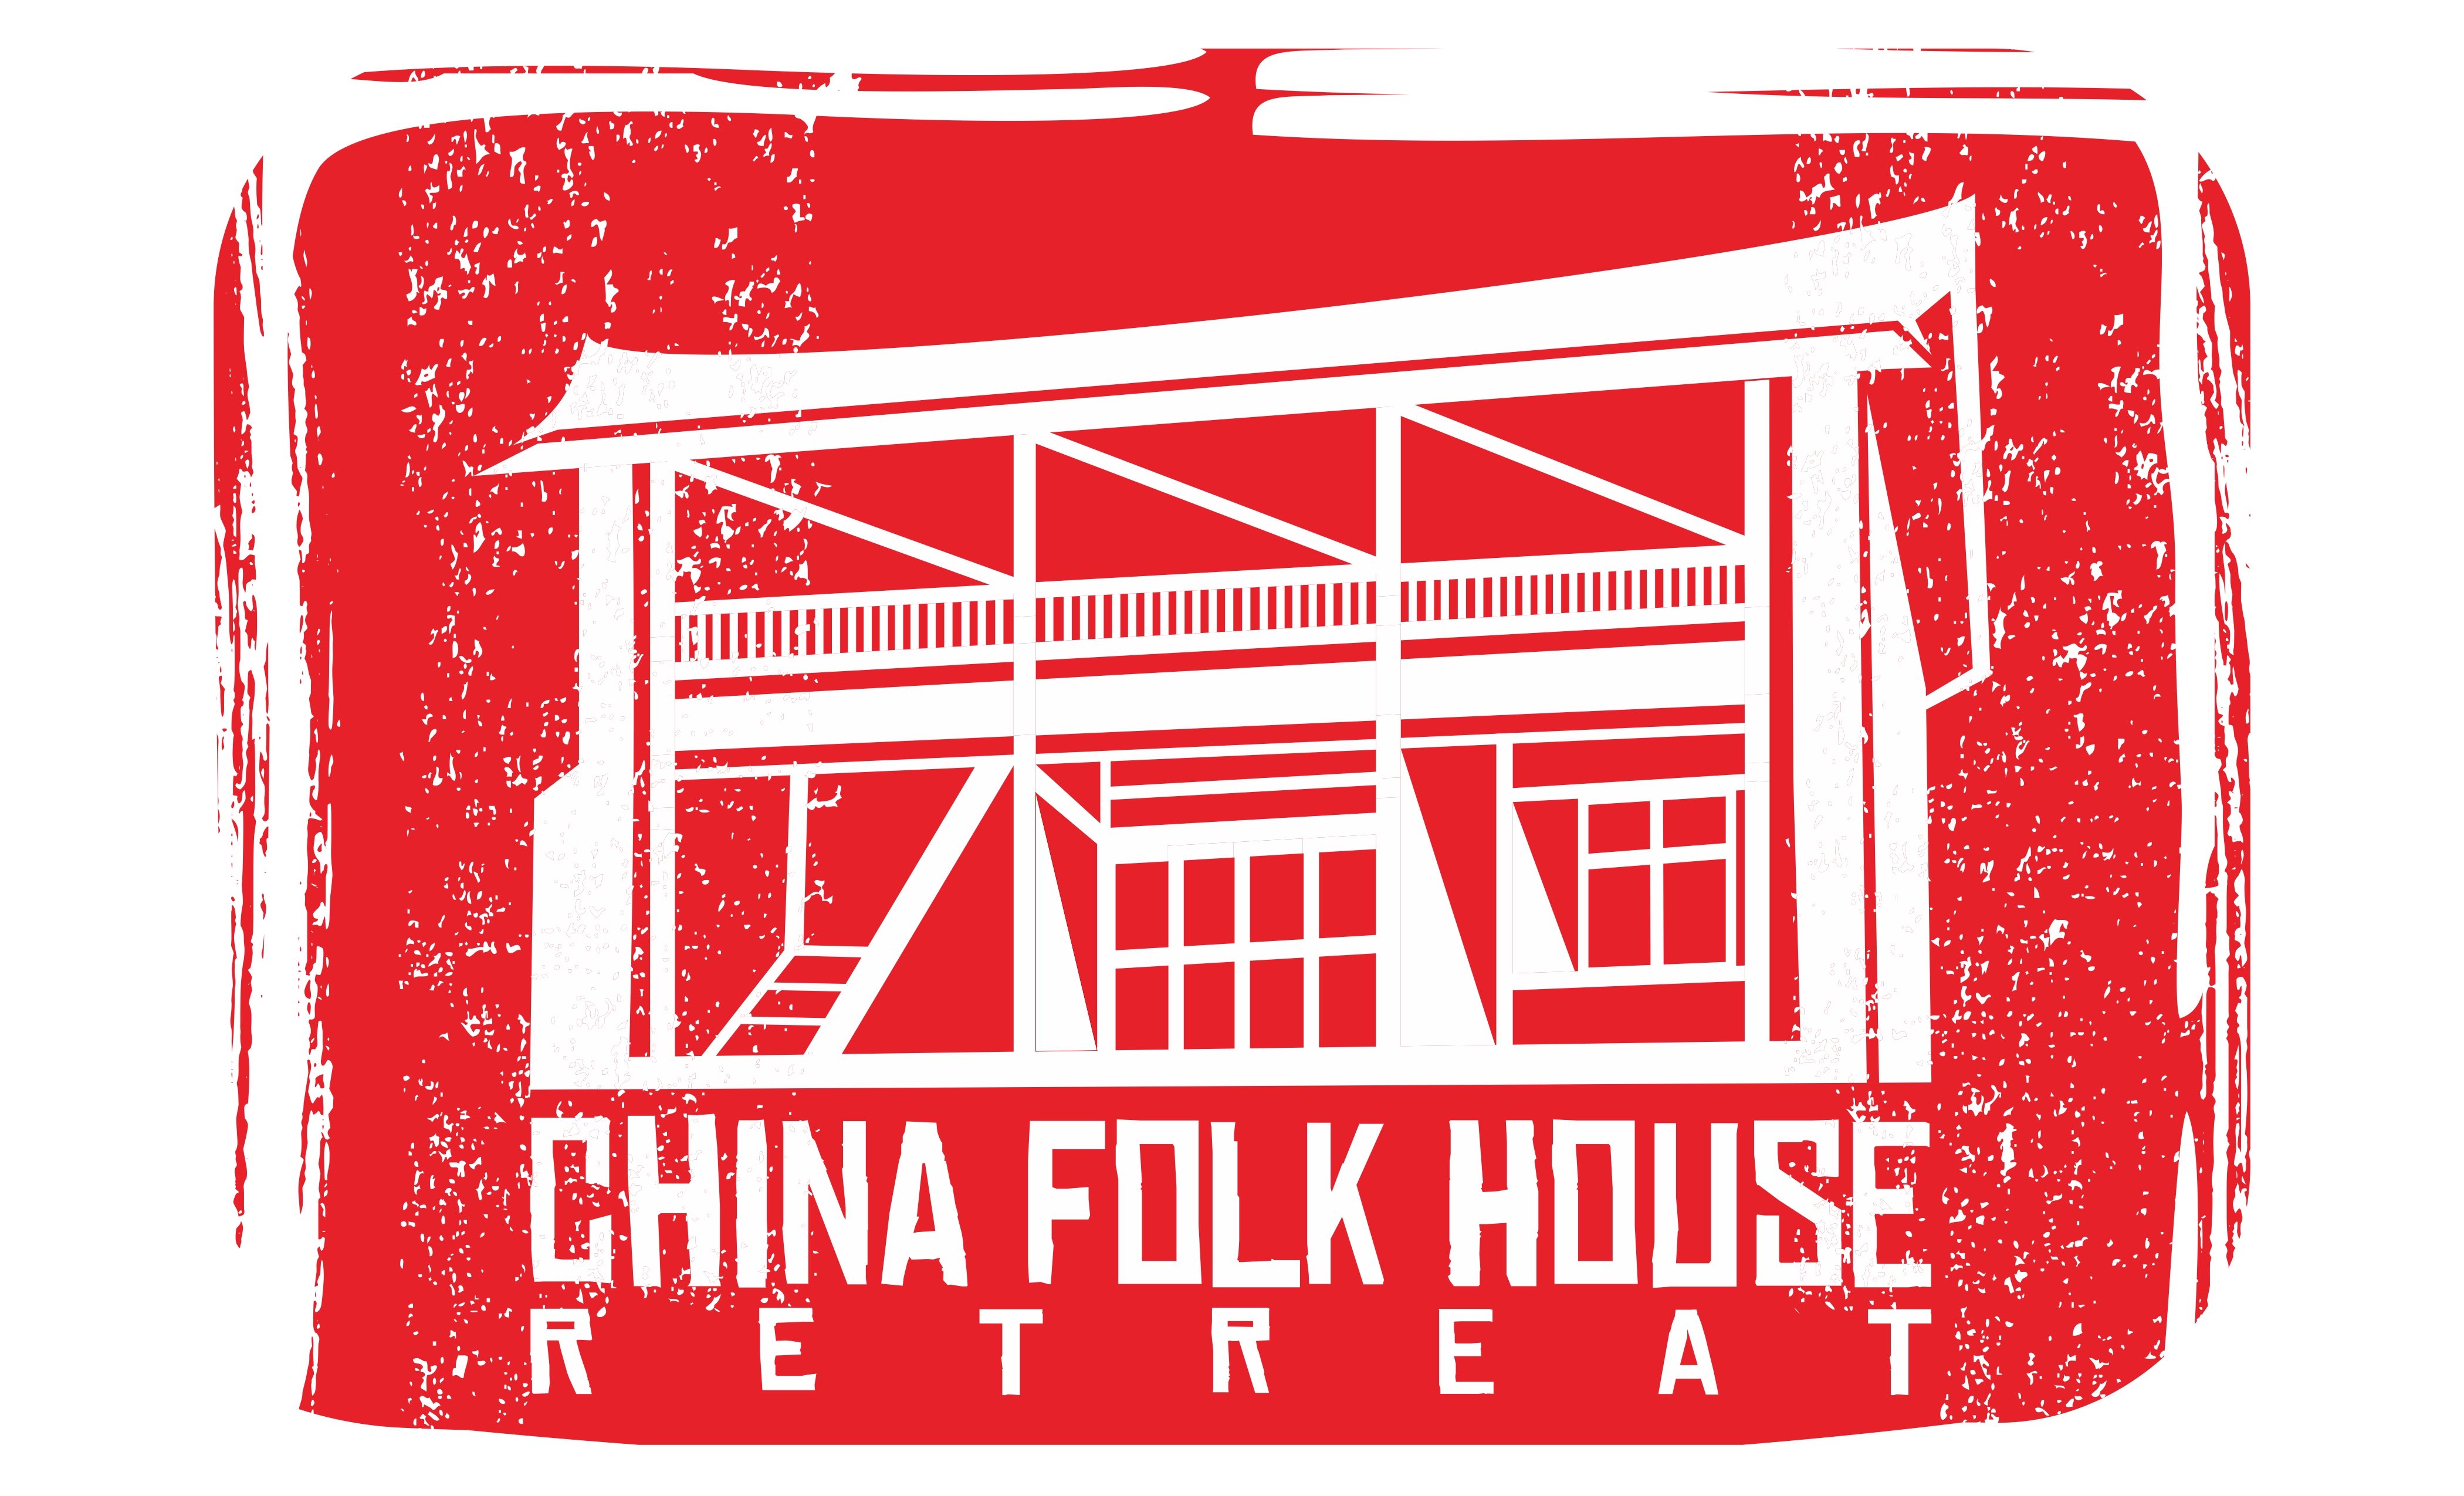 The China Folk House Retreat logo